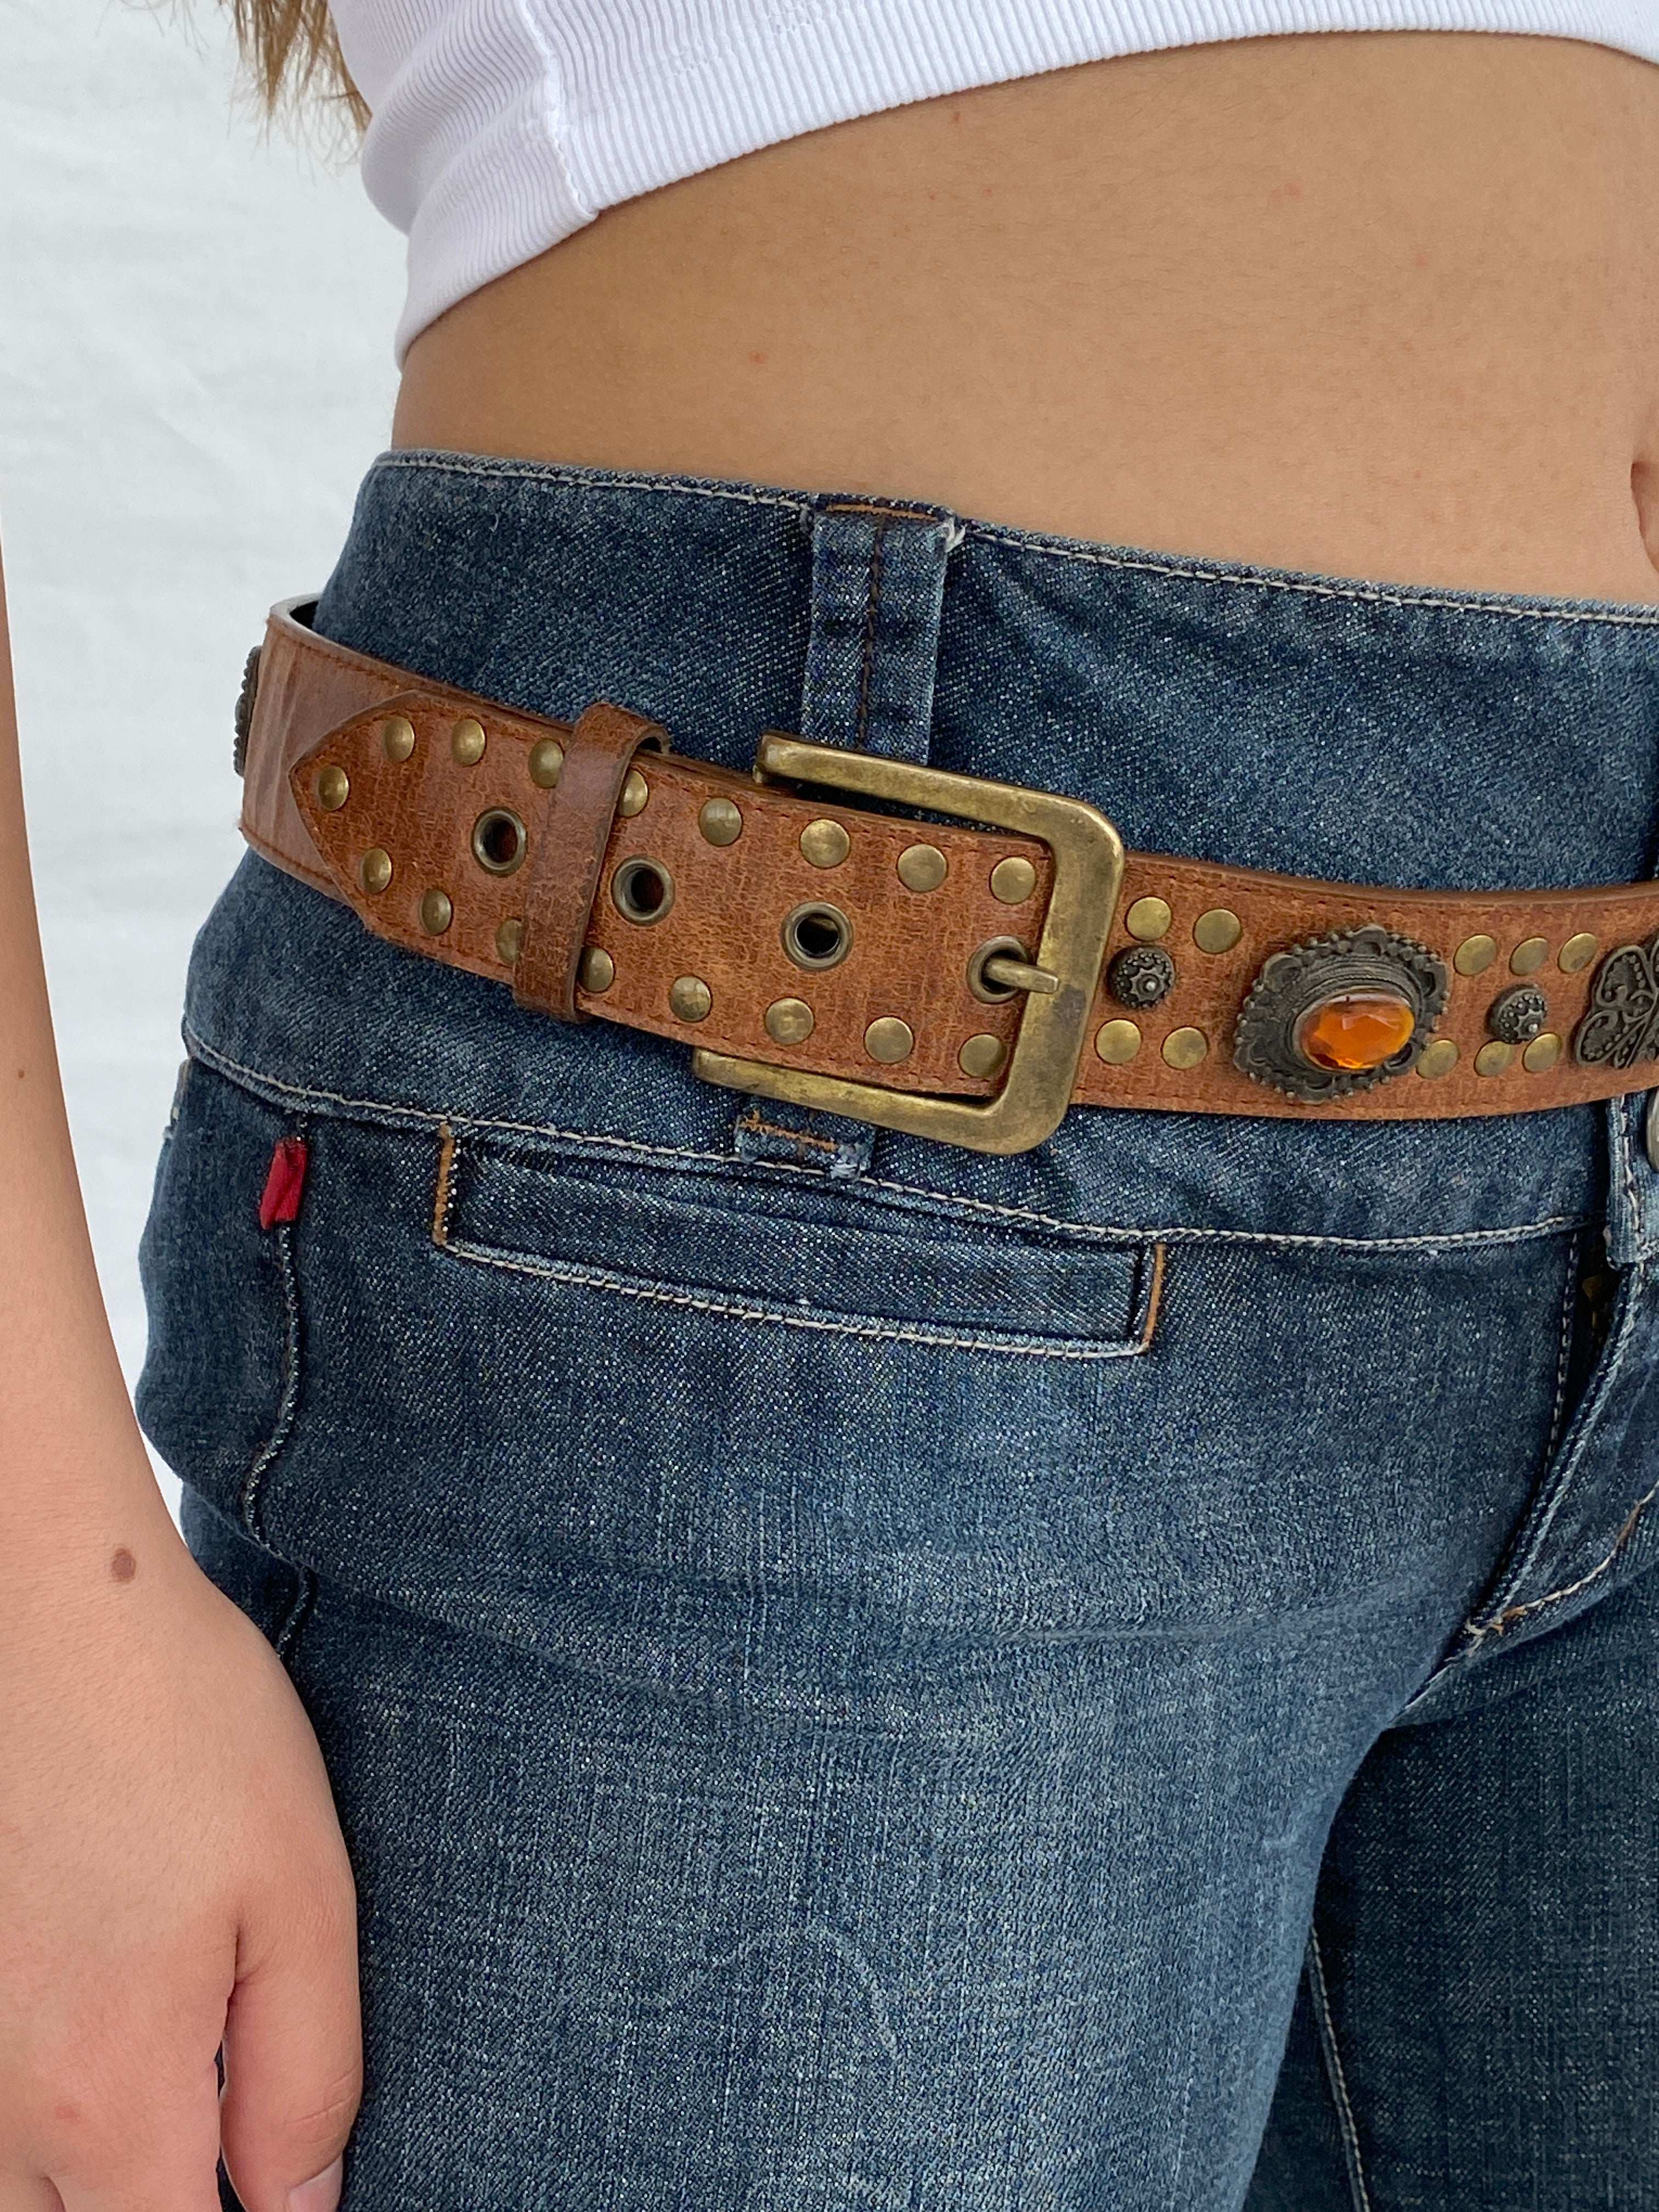 Vintage Western Style Cowboy Embellished Belt - Balagan Vintage 80s, belt, cowboy, Lana, NEW IN